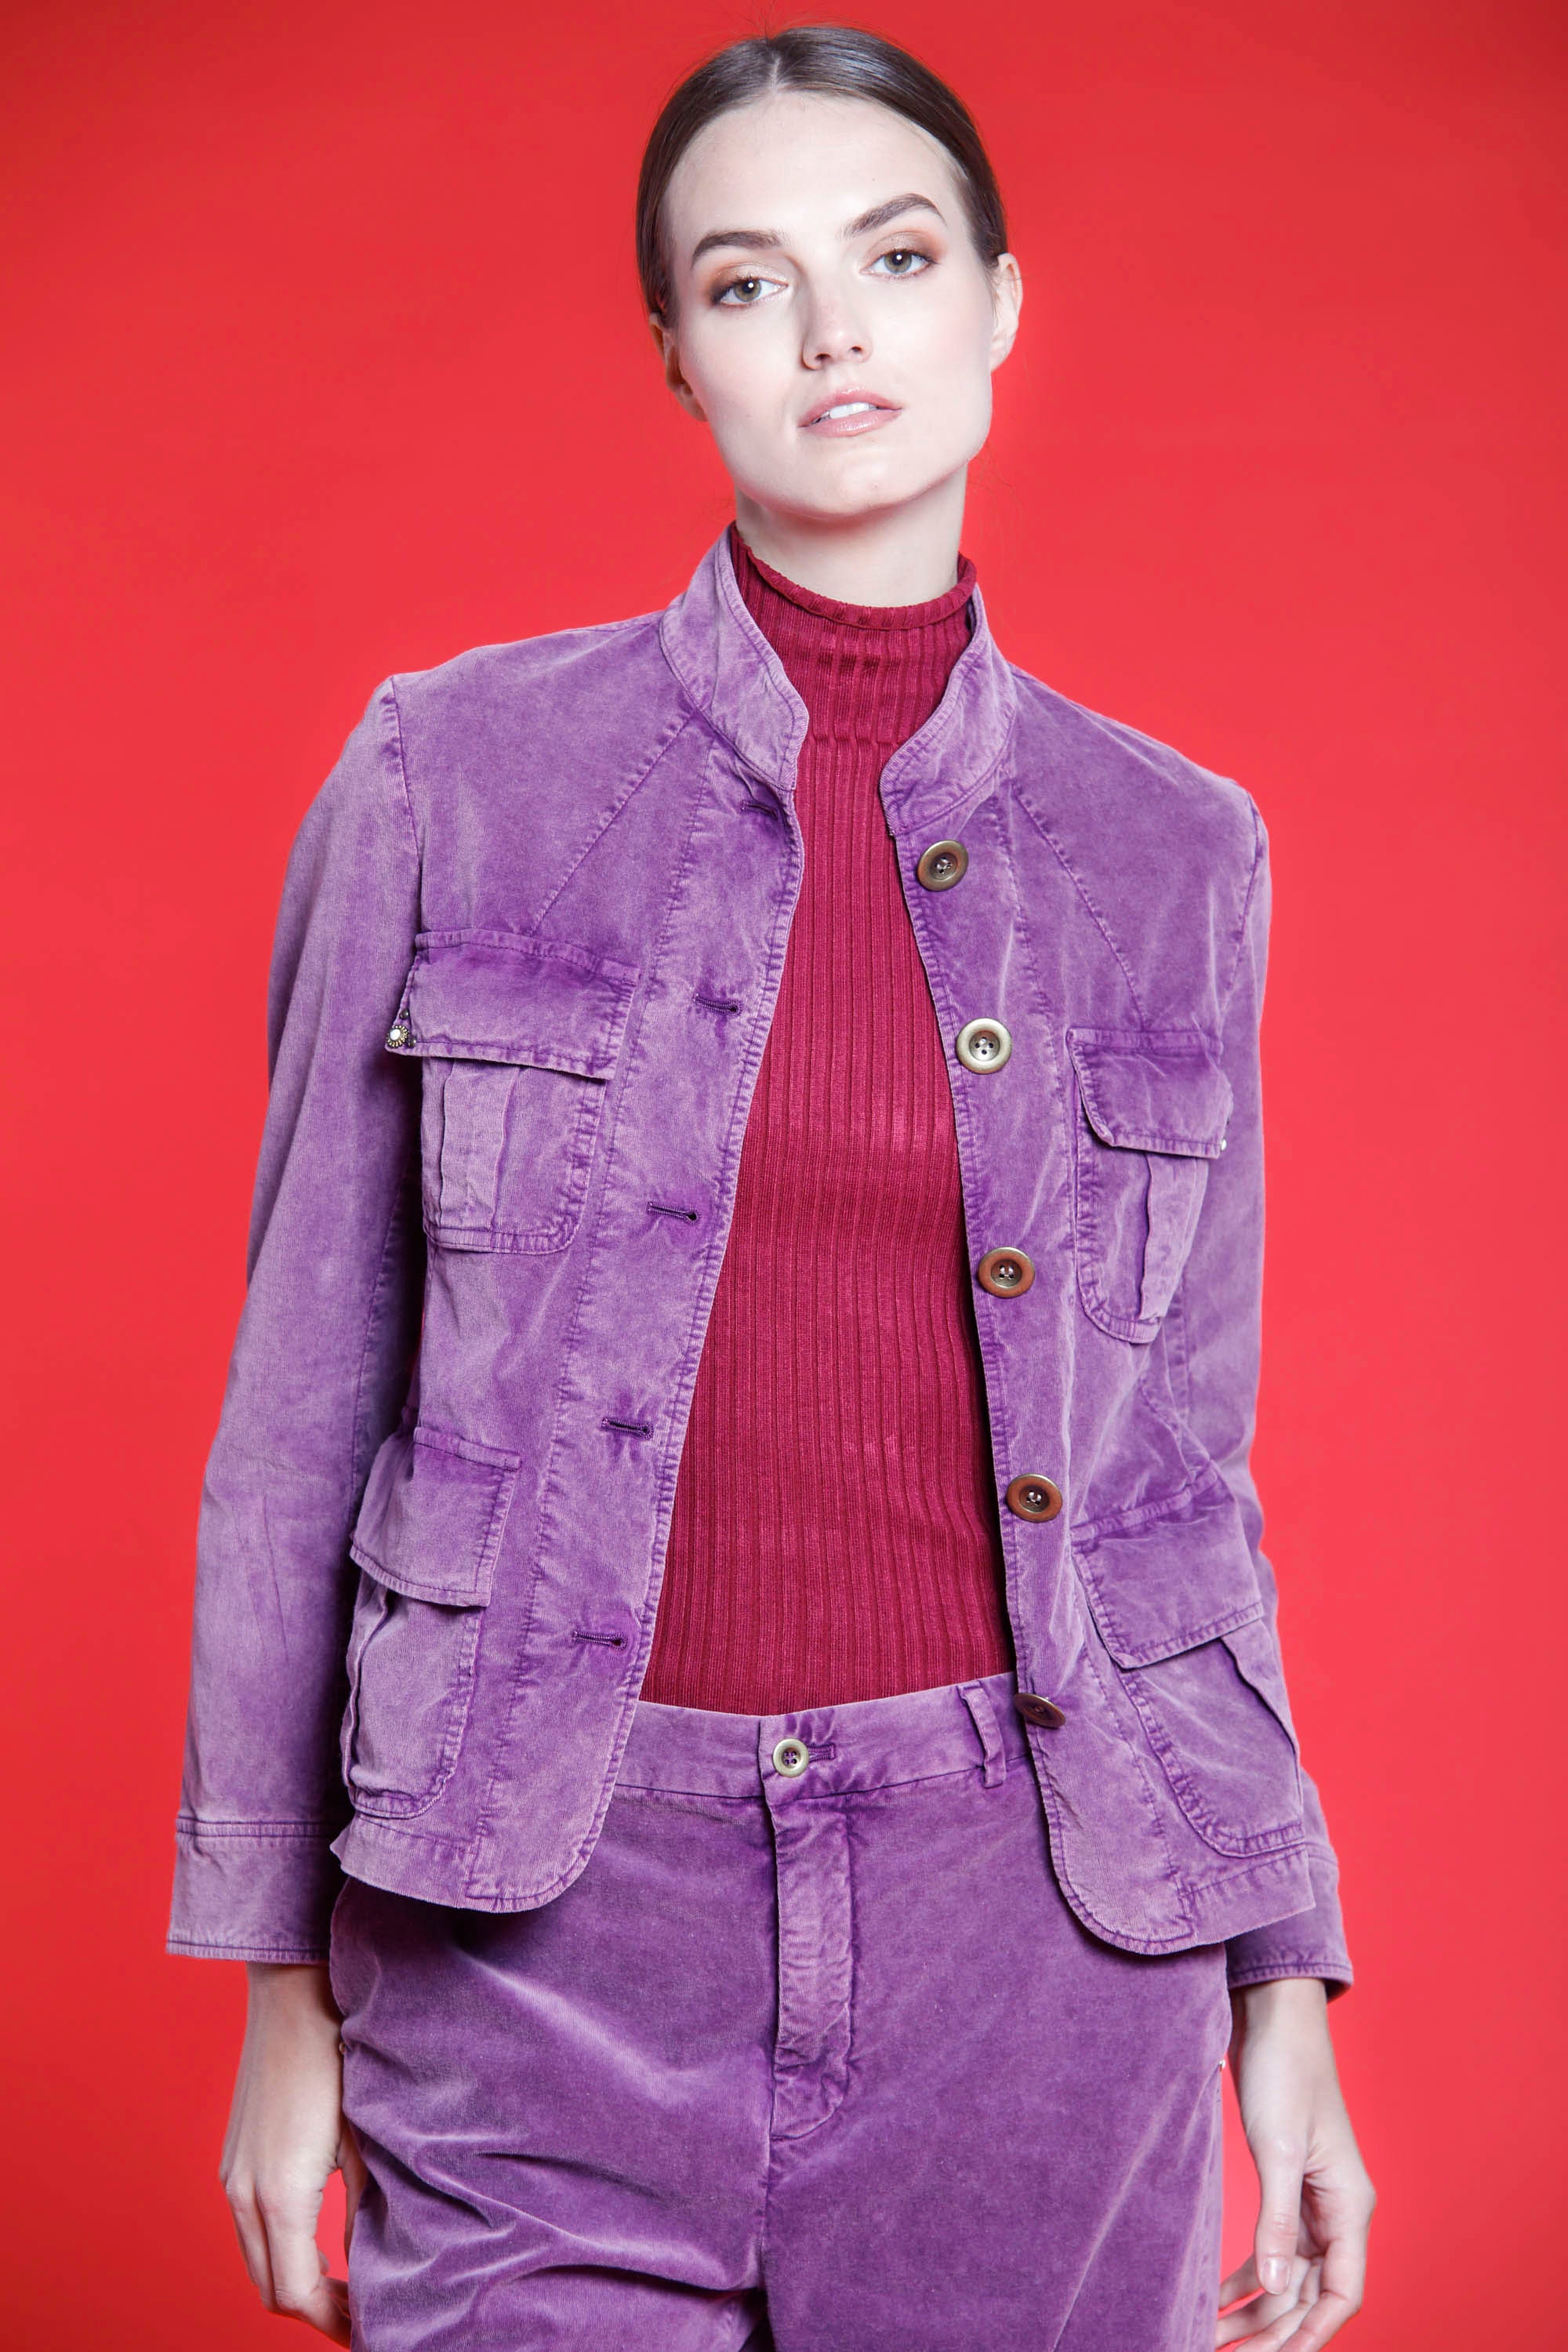 Image 1 de Veste femme en velours violet 1000 rayures modèle Karen par Mason's